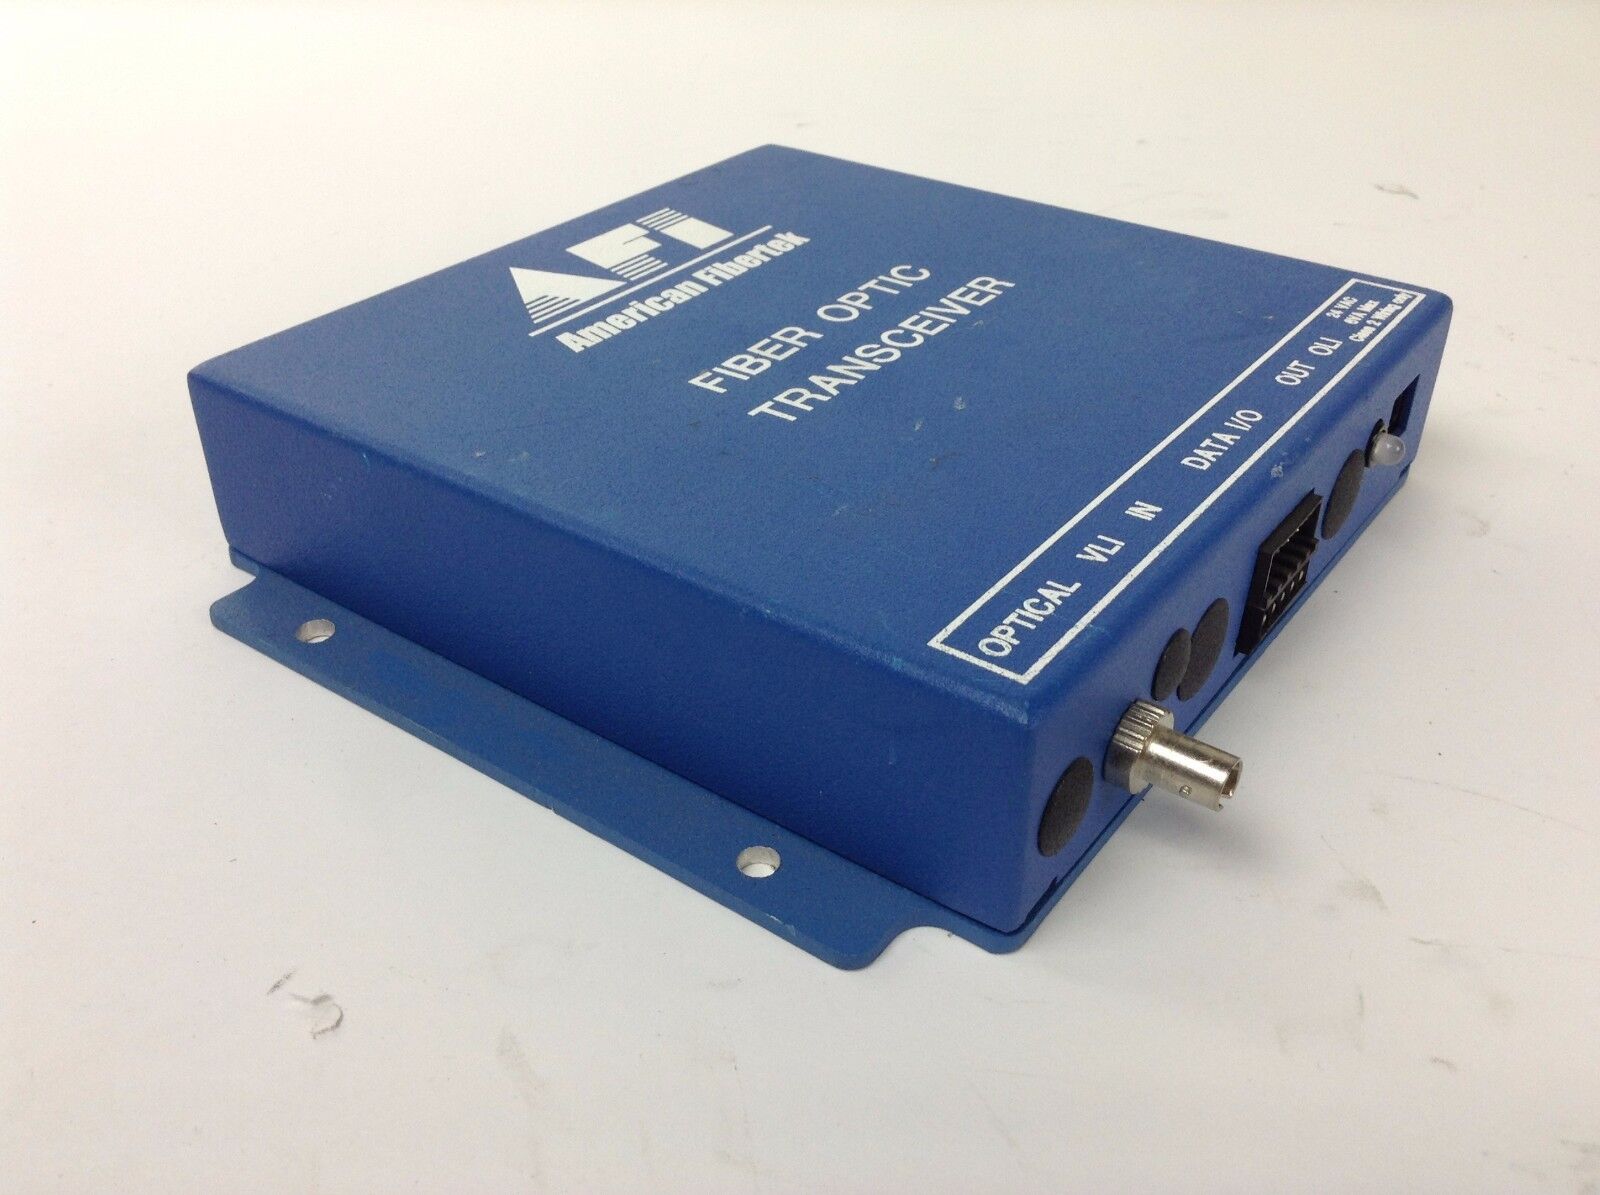 American Fibertek Model MR-0480 Fiber Optic Transceiver